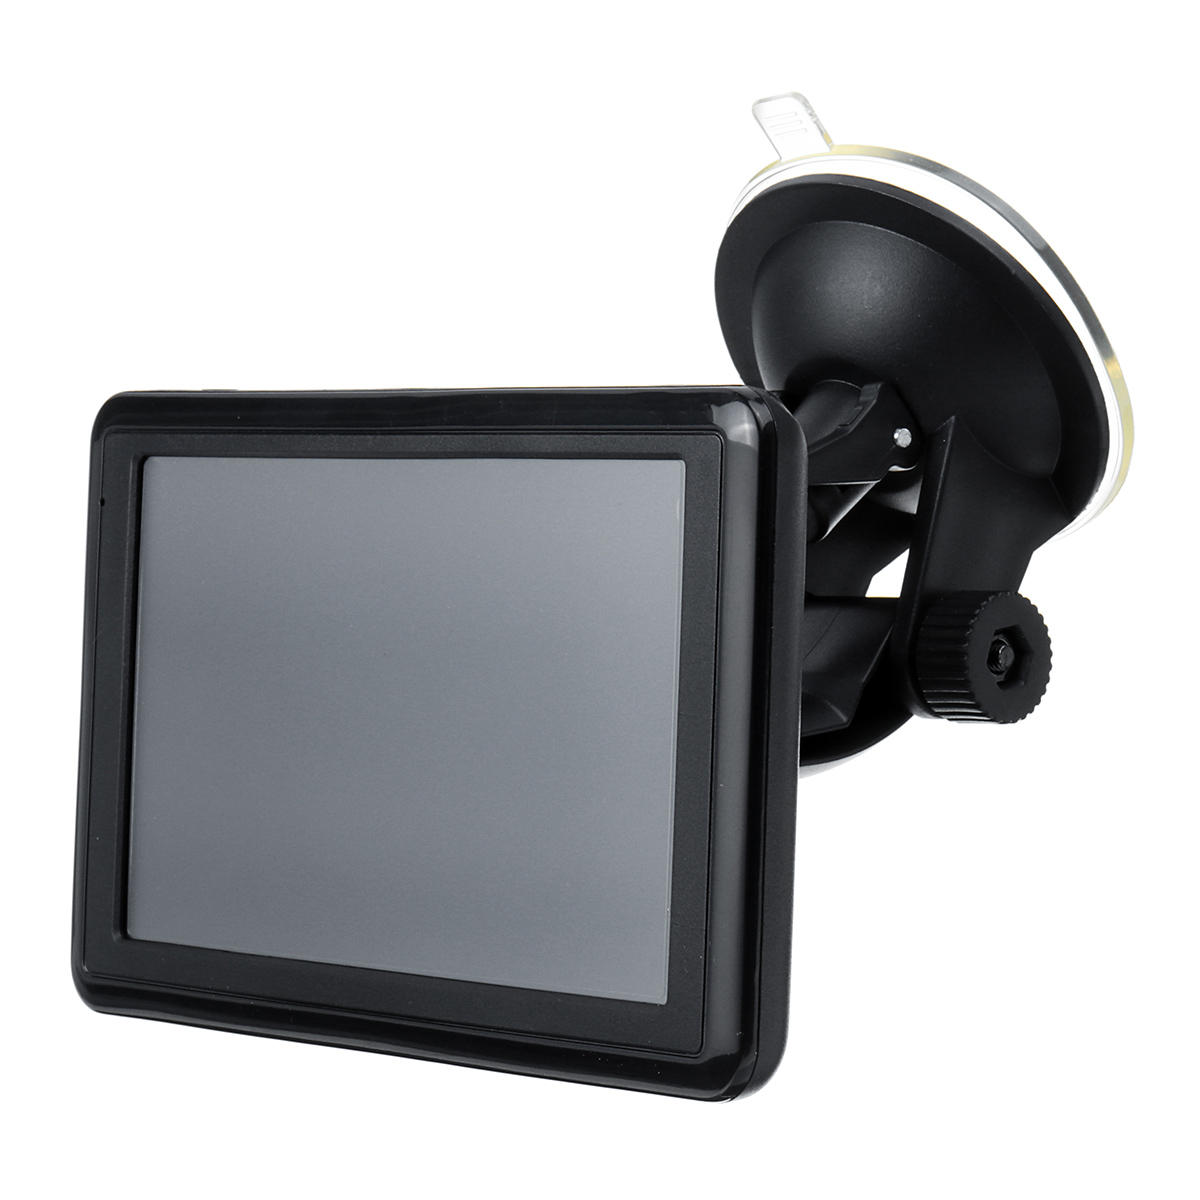 5 inch autoradio GPS 4 GB + 128 GB touchscreen 4G Australi? Wereldkaart TFT LCD-scherm